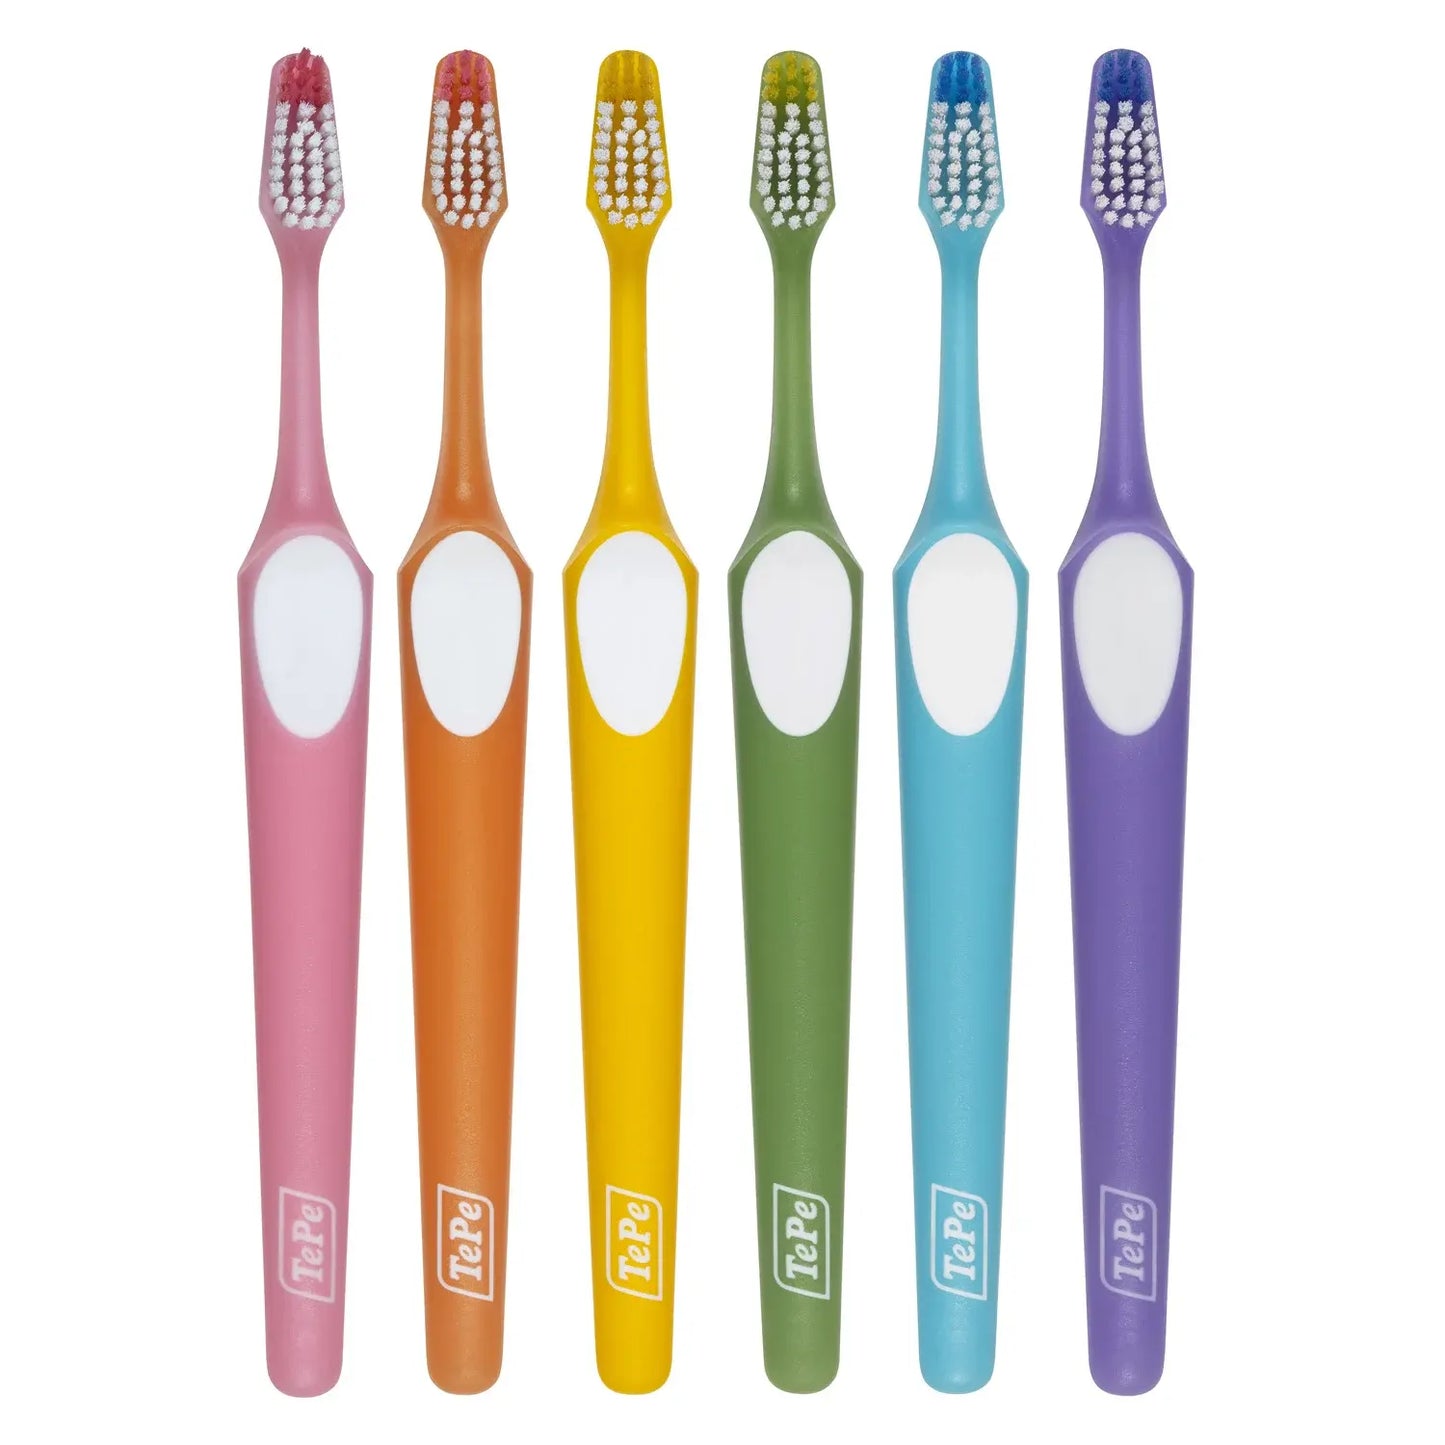 TEPE Good hammasharja nova soft vastuullinen hammasharja pehmeä valikoima